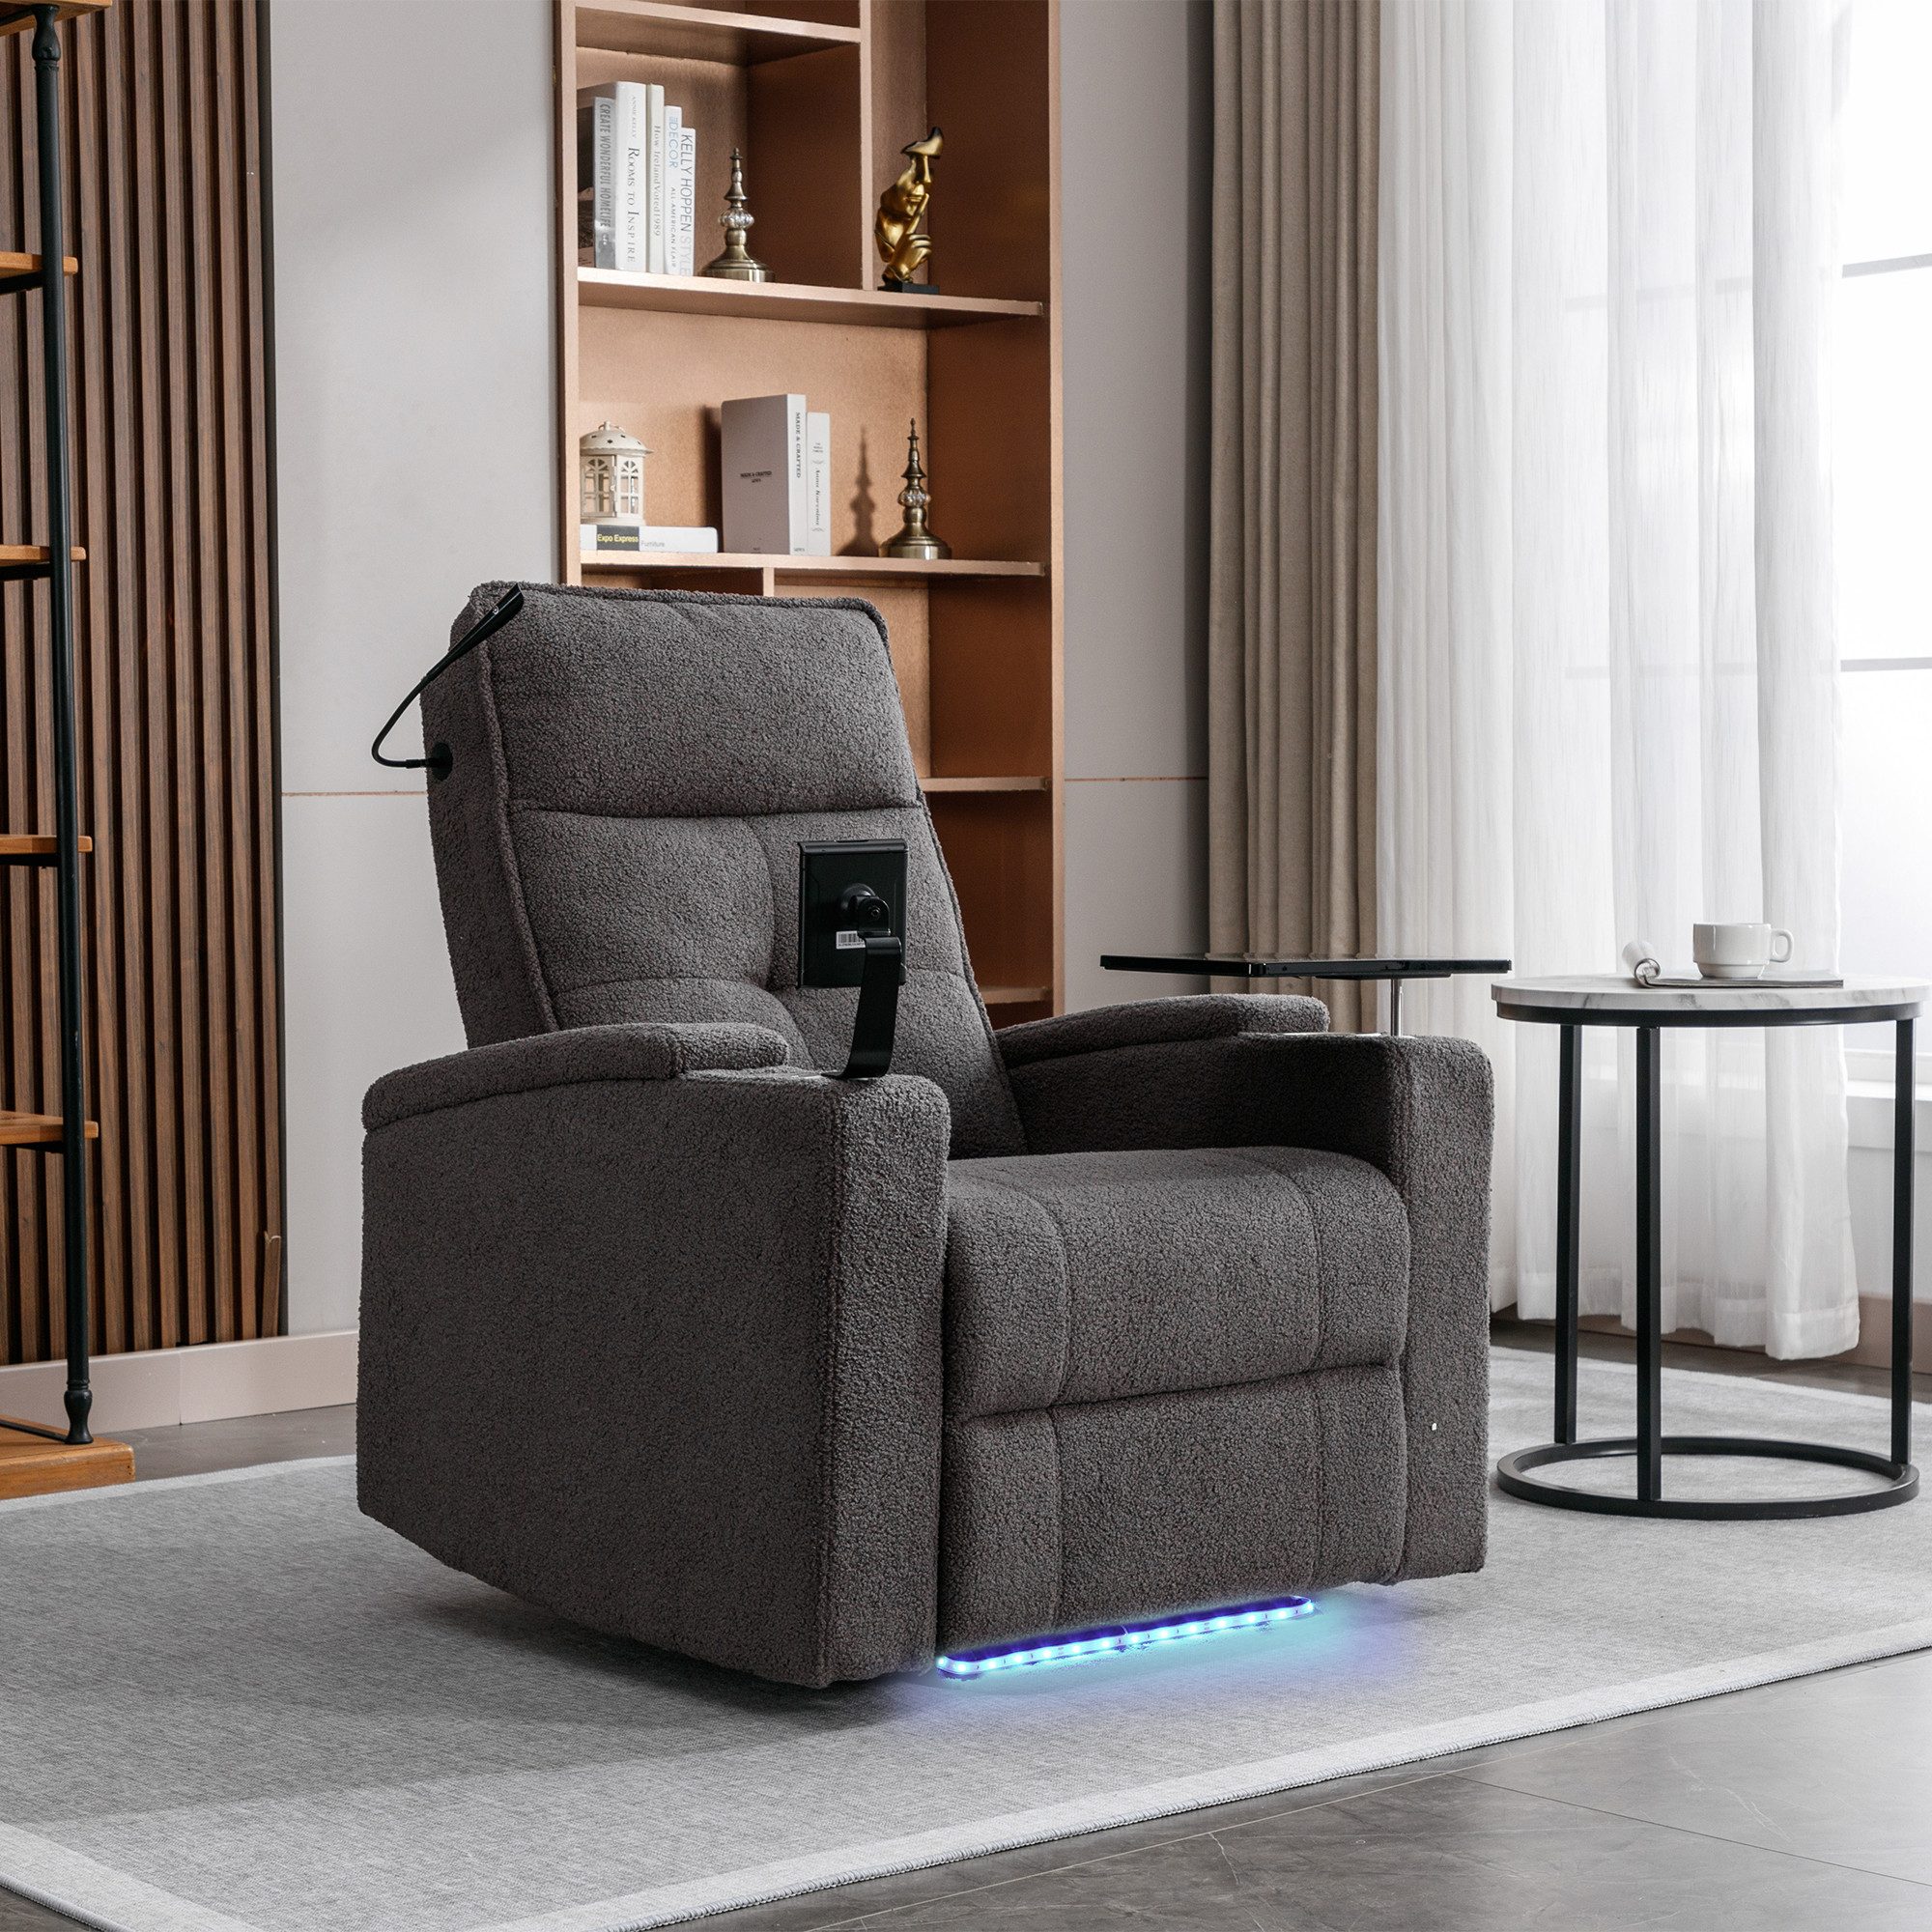 TavilaEcon Relaxsessel LED elektrischer Liegestuhl TV-Sessel mit USB-Ladeanschluss, 360 drehbarer Tabletttisch/Handyhalter,Getränkehalter